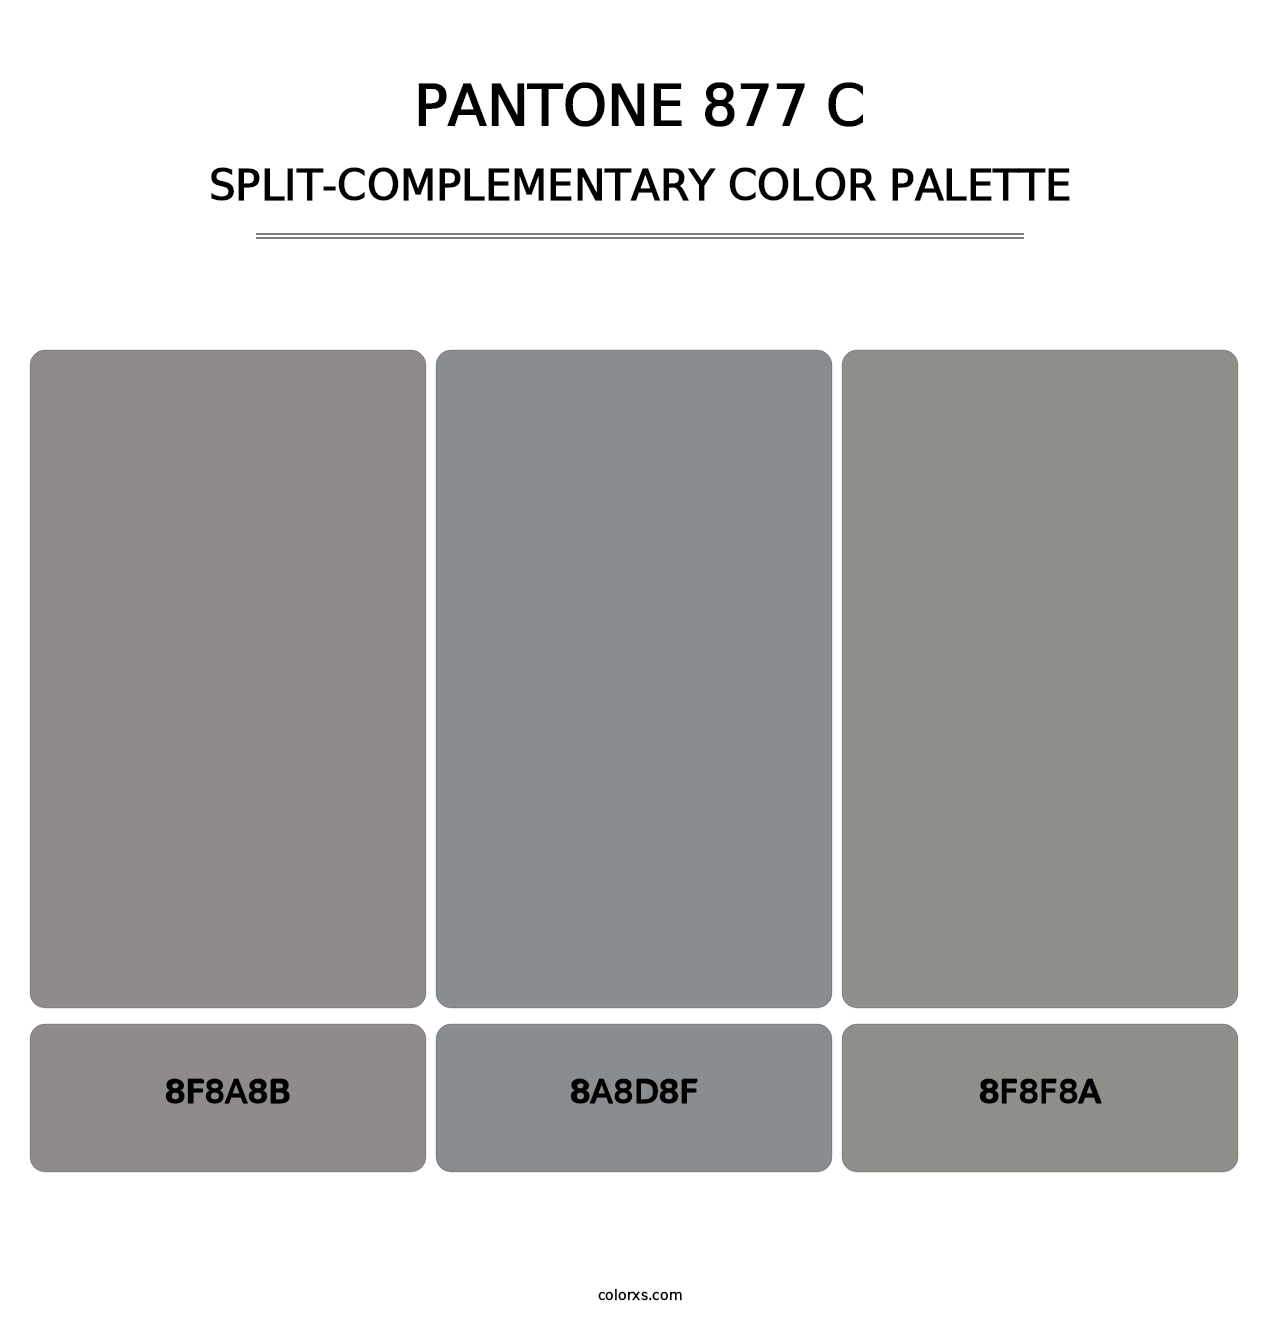 PANTONE 877 C - Split-Complementary Color Palette